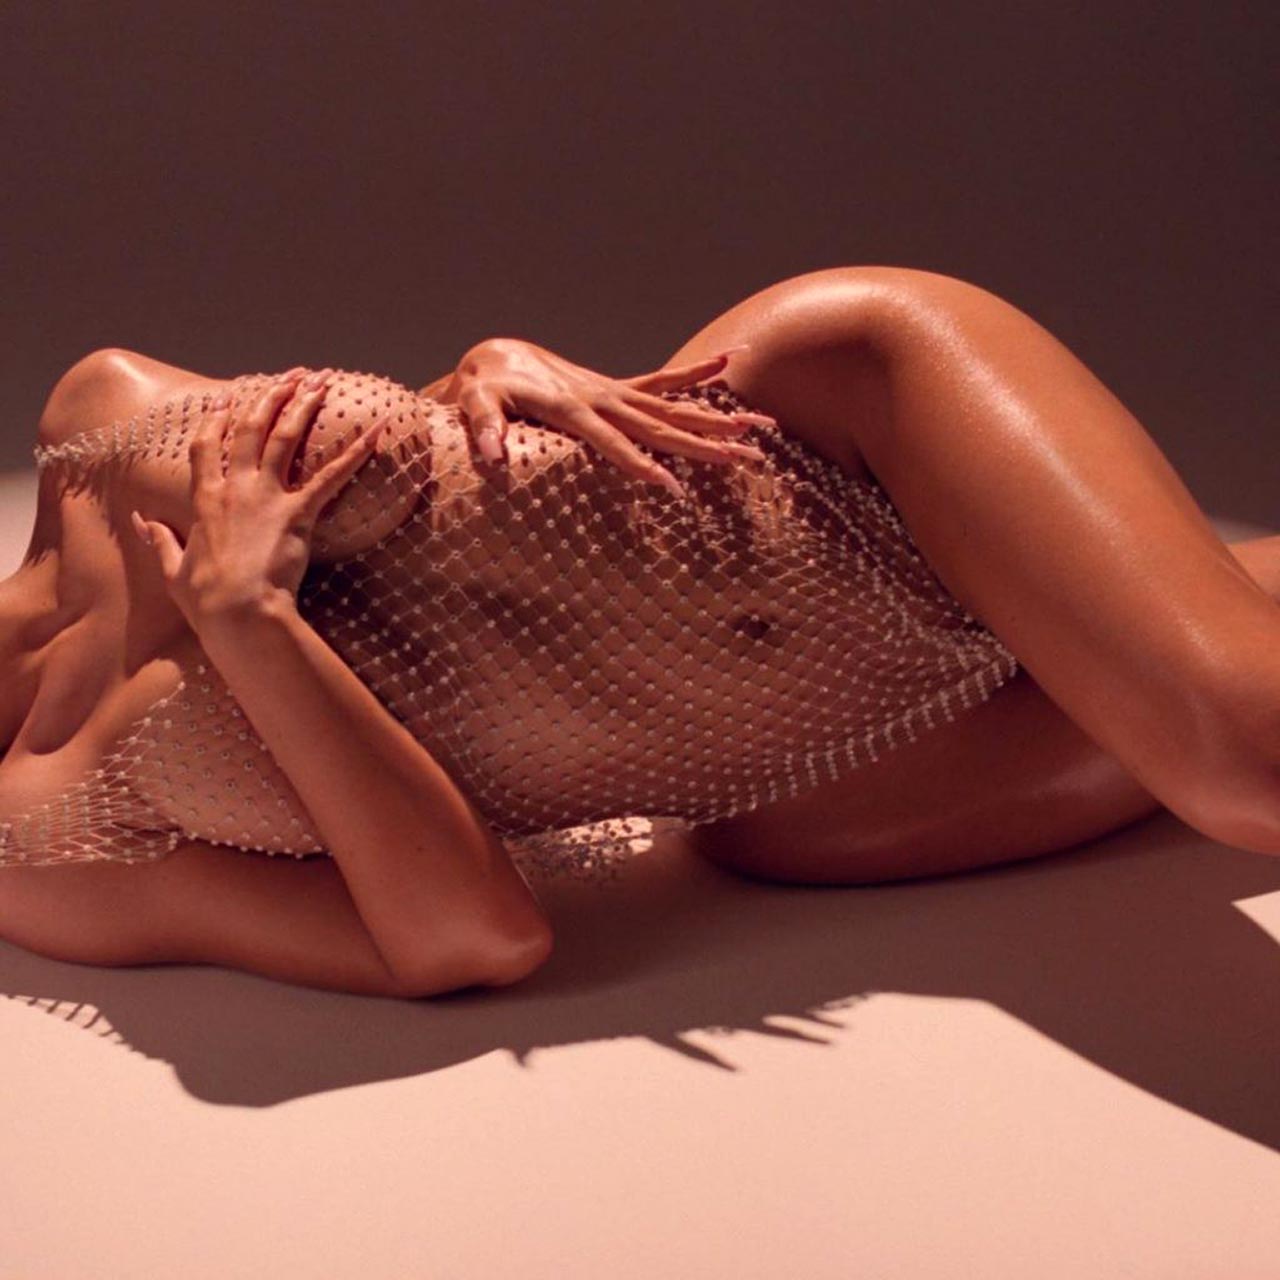 Kylie Jenner Nude Photos.